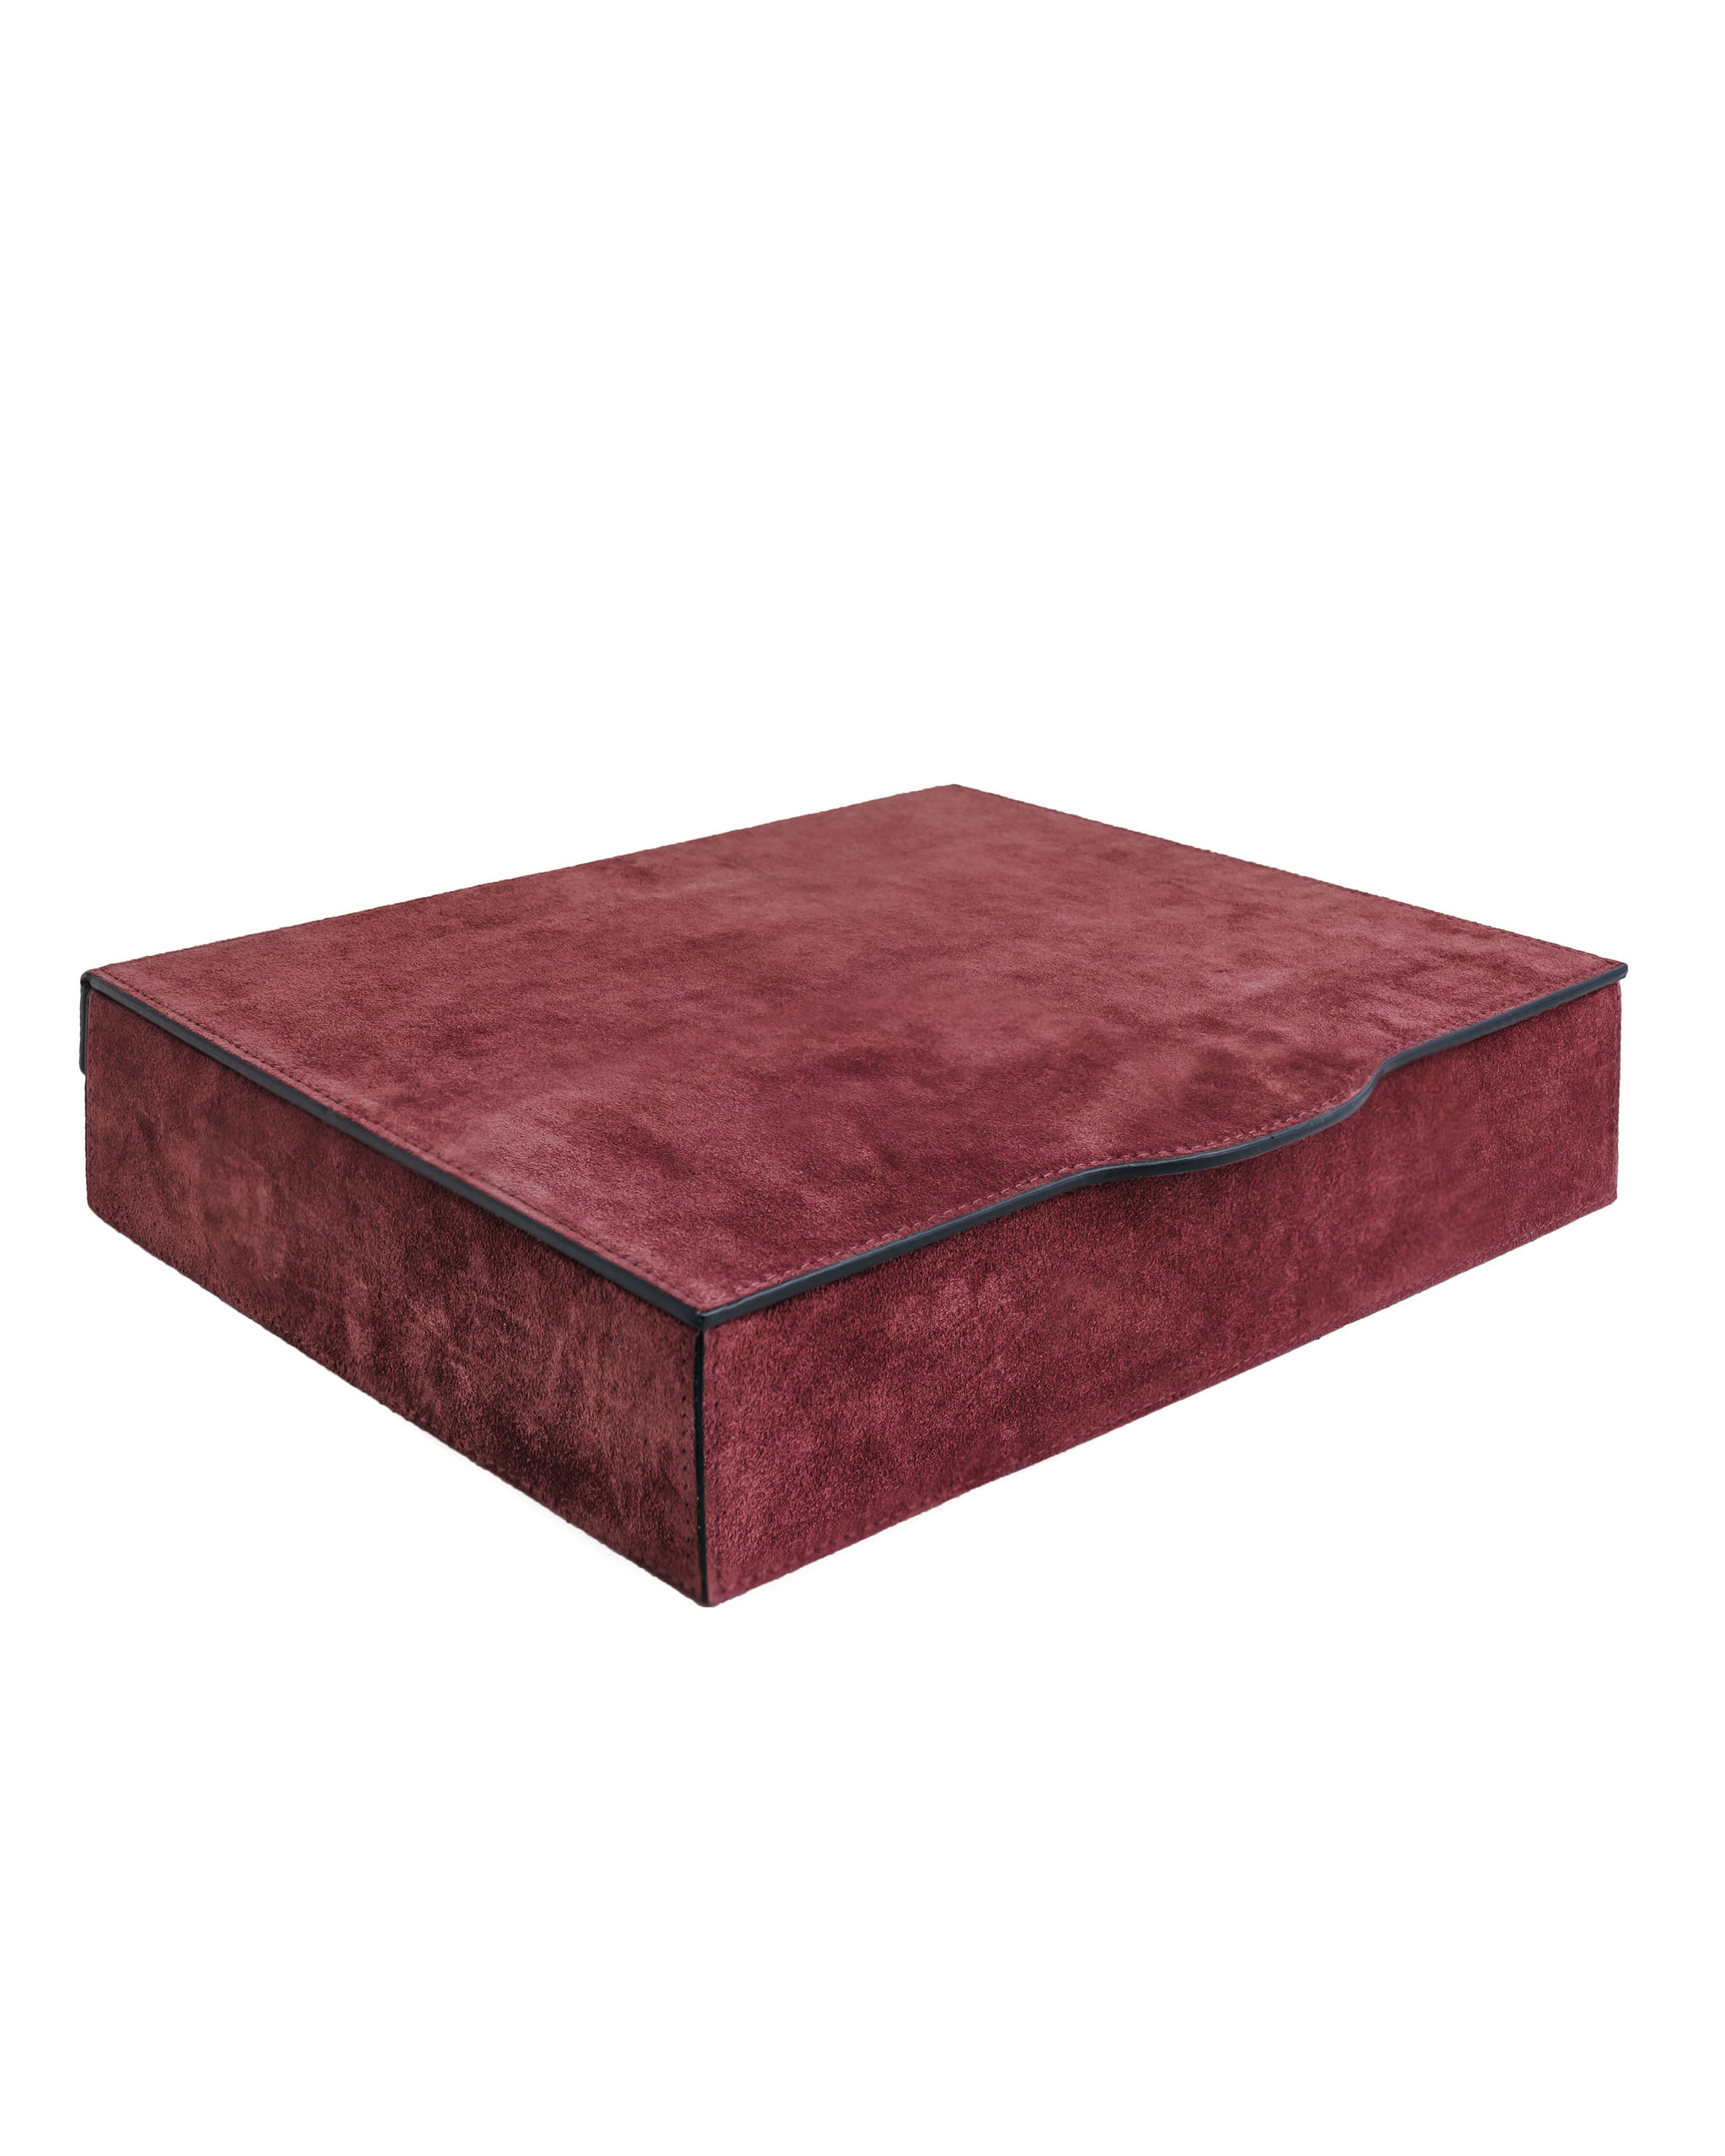 Giobagnara “Luna trinket box retangular large” karp